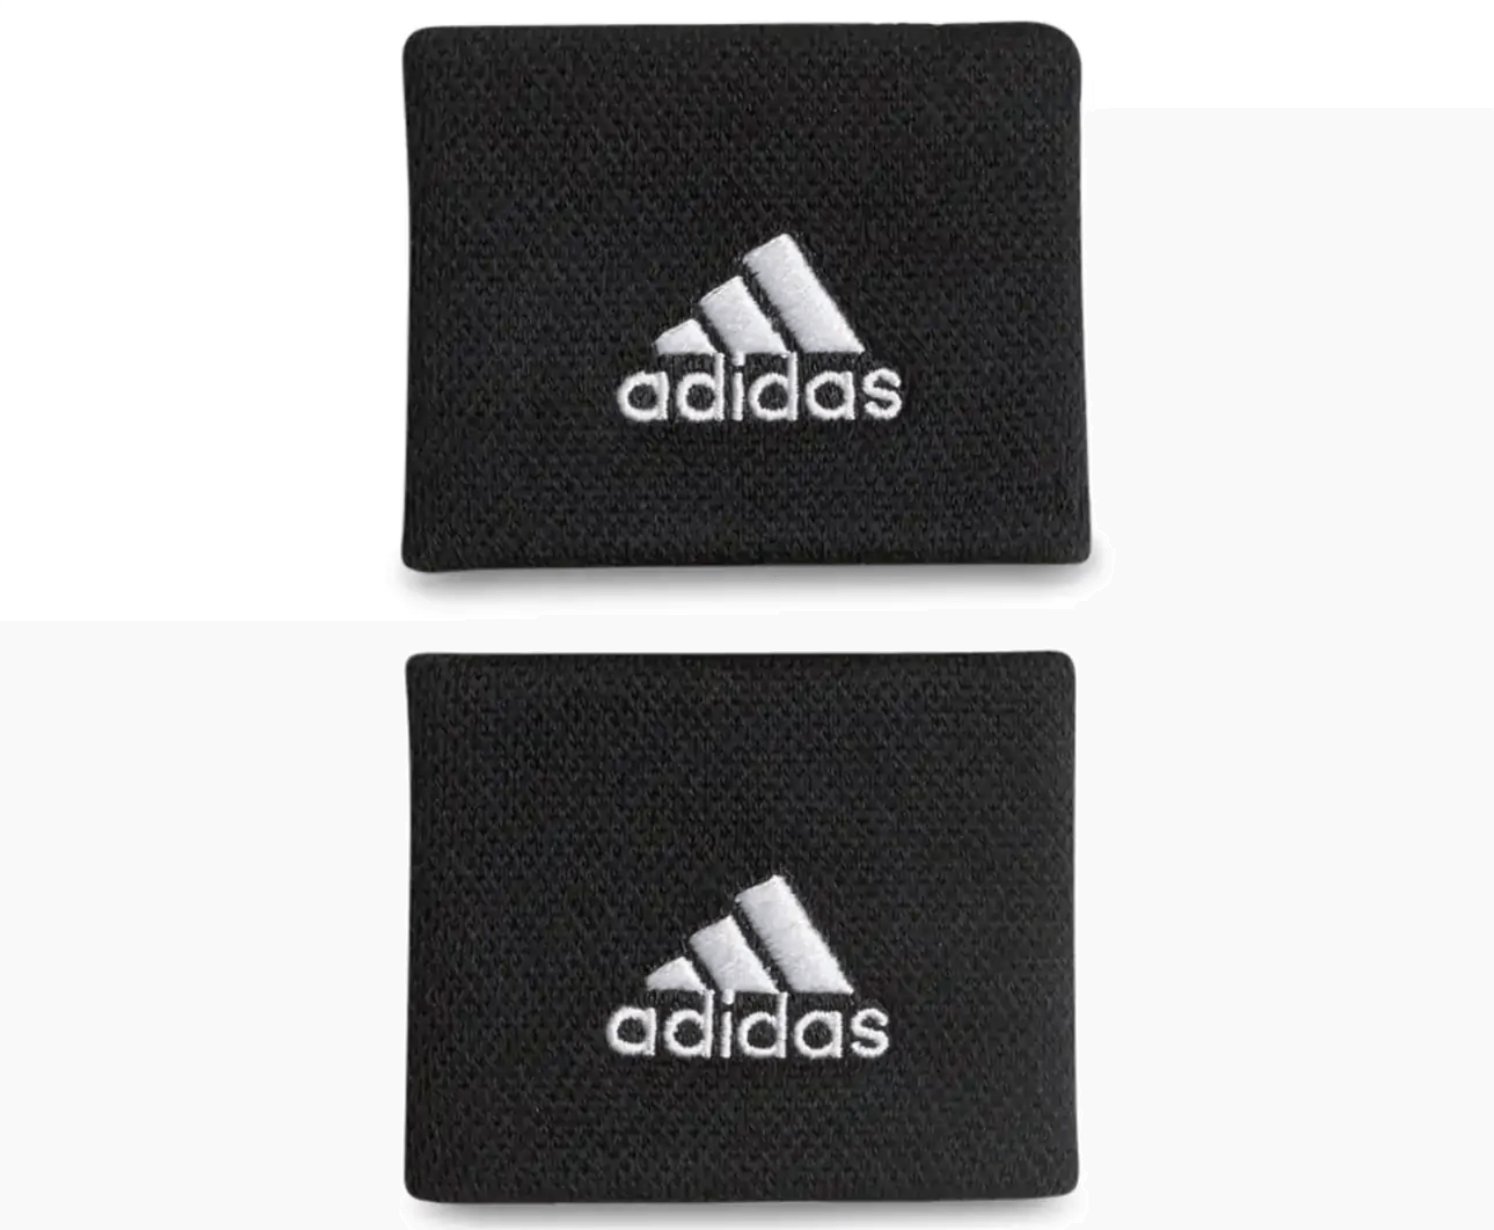 Adidas Unisex Size Small Tennis Wristband Pair - Black/White